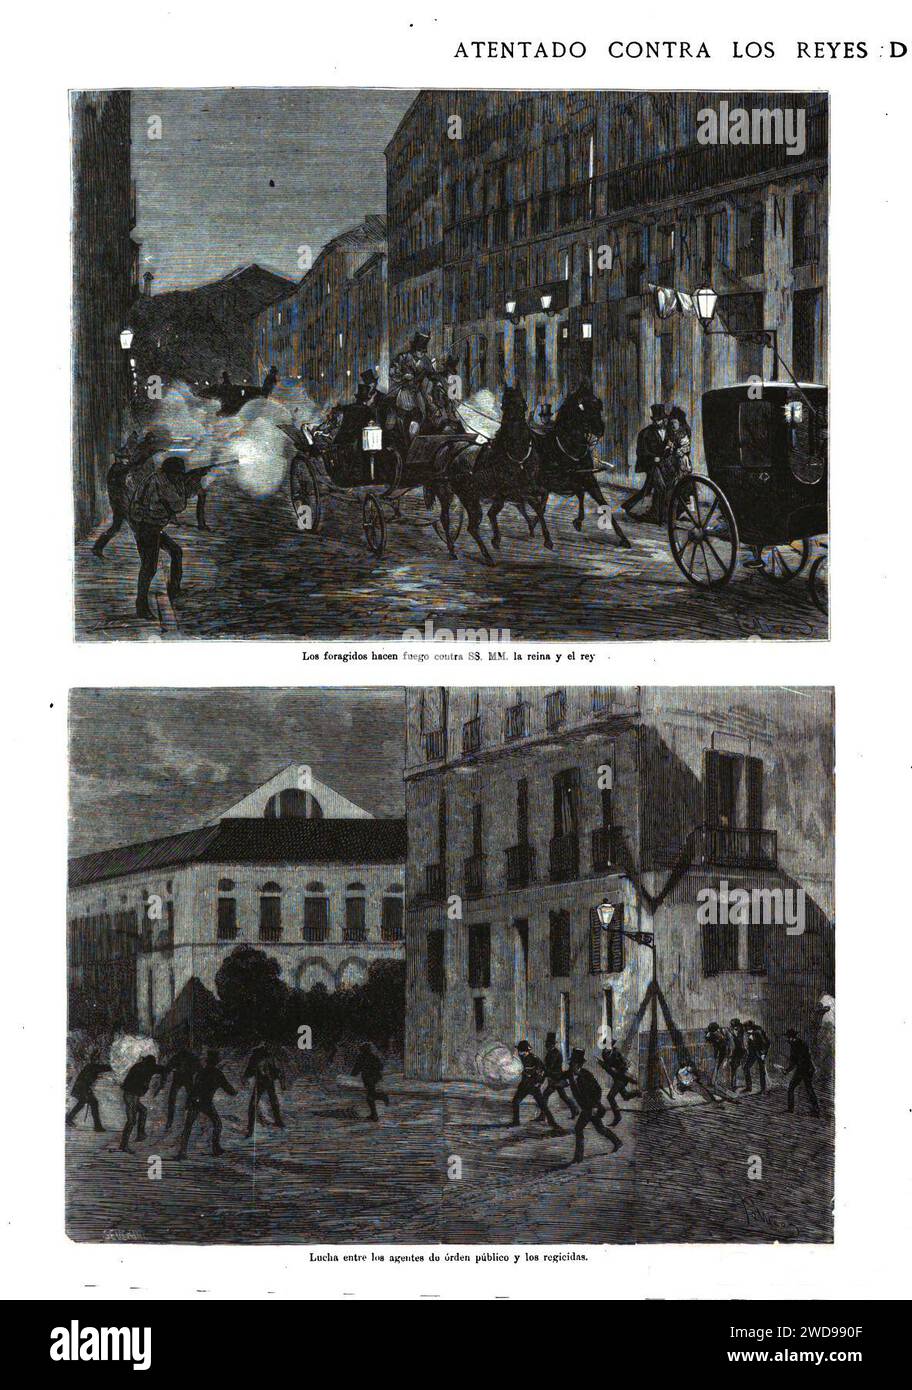 1872-07-24, La Ilustración Española y Americana, Atentado contra los reyes de España en la noche del 18 a. Stock Photo